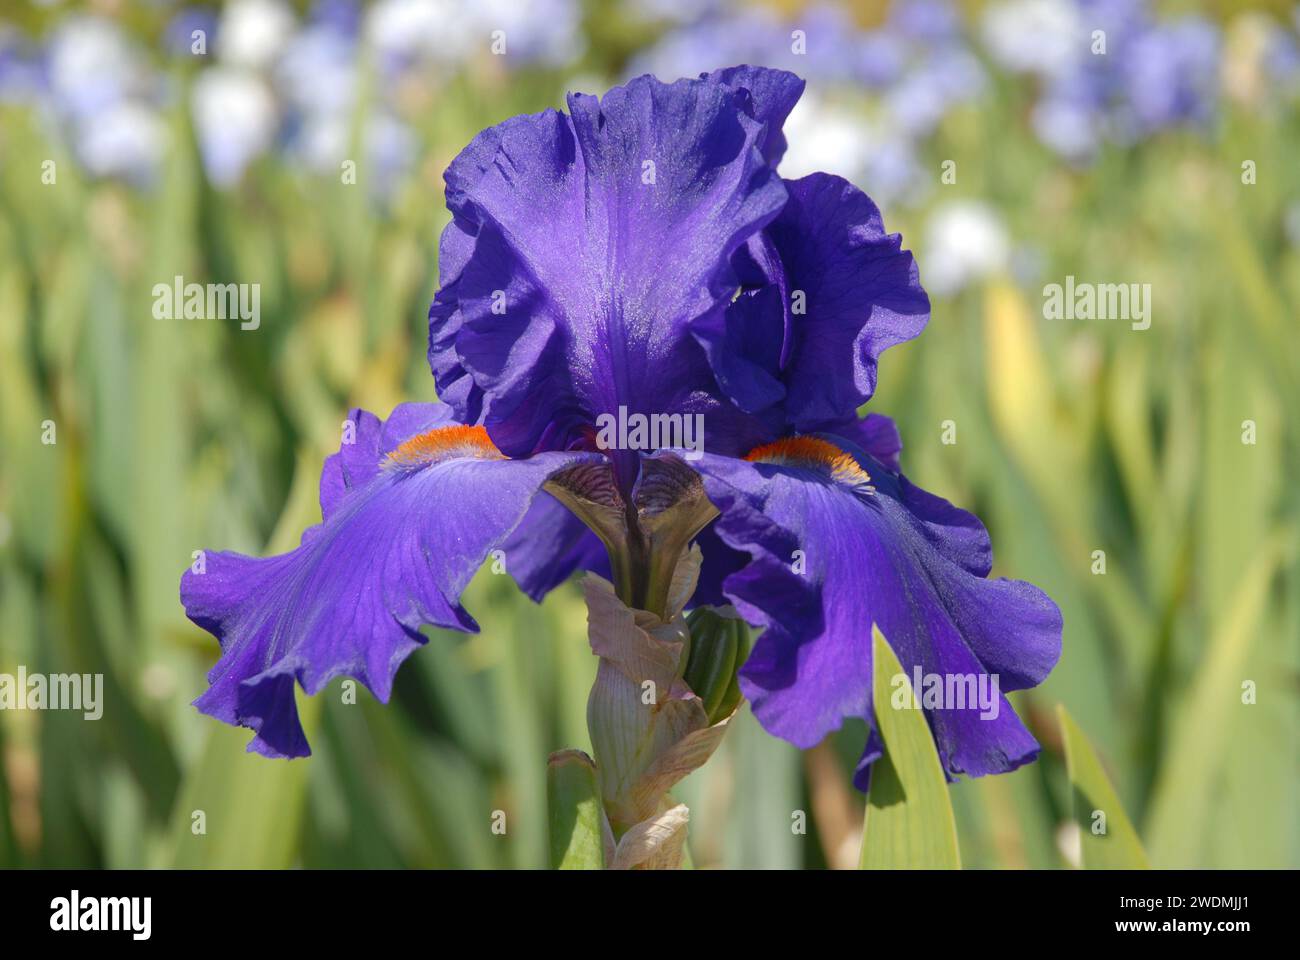 Tall bearded iris flower, Purple with orange beard, known as Paul Black Stock Photo